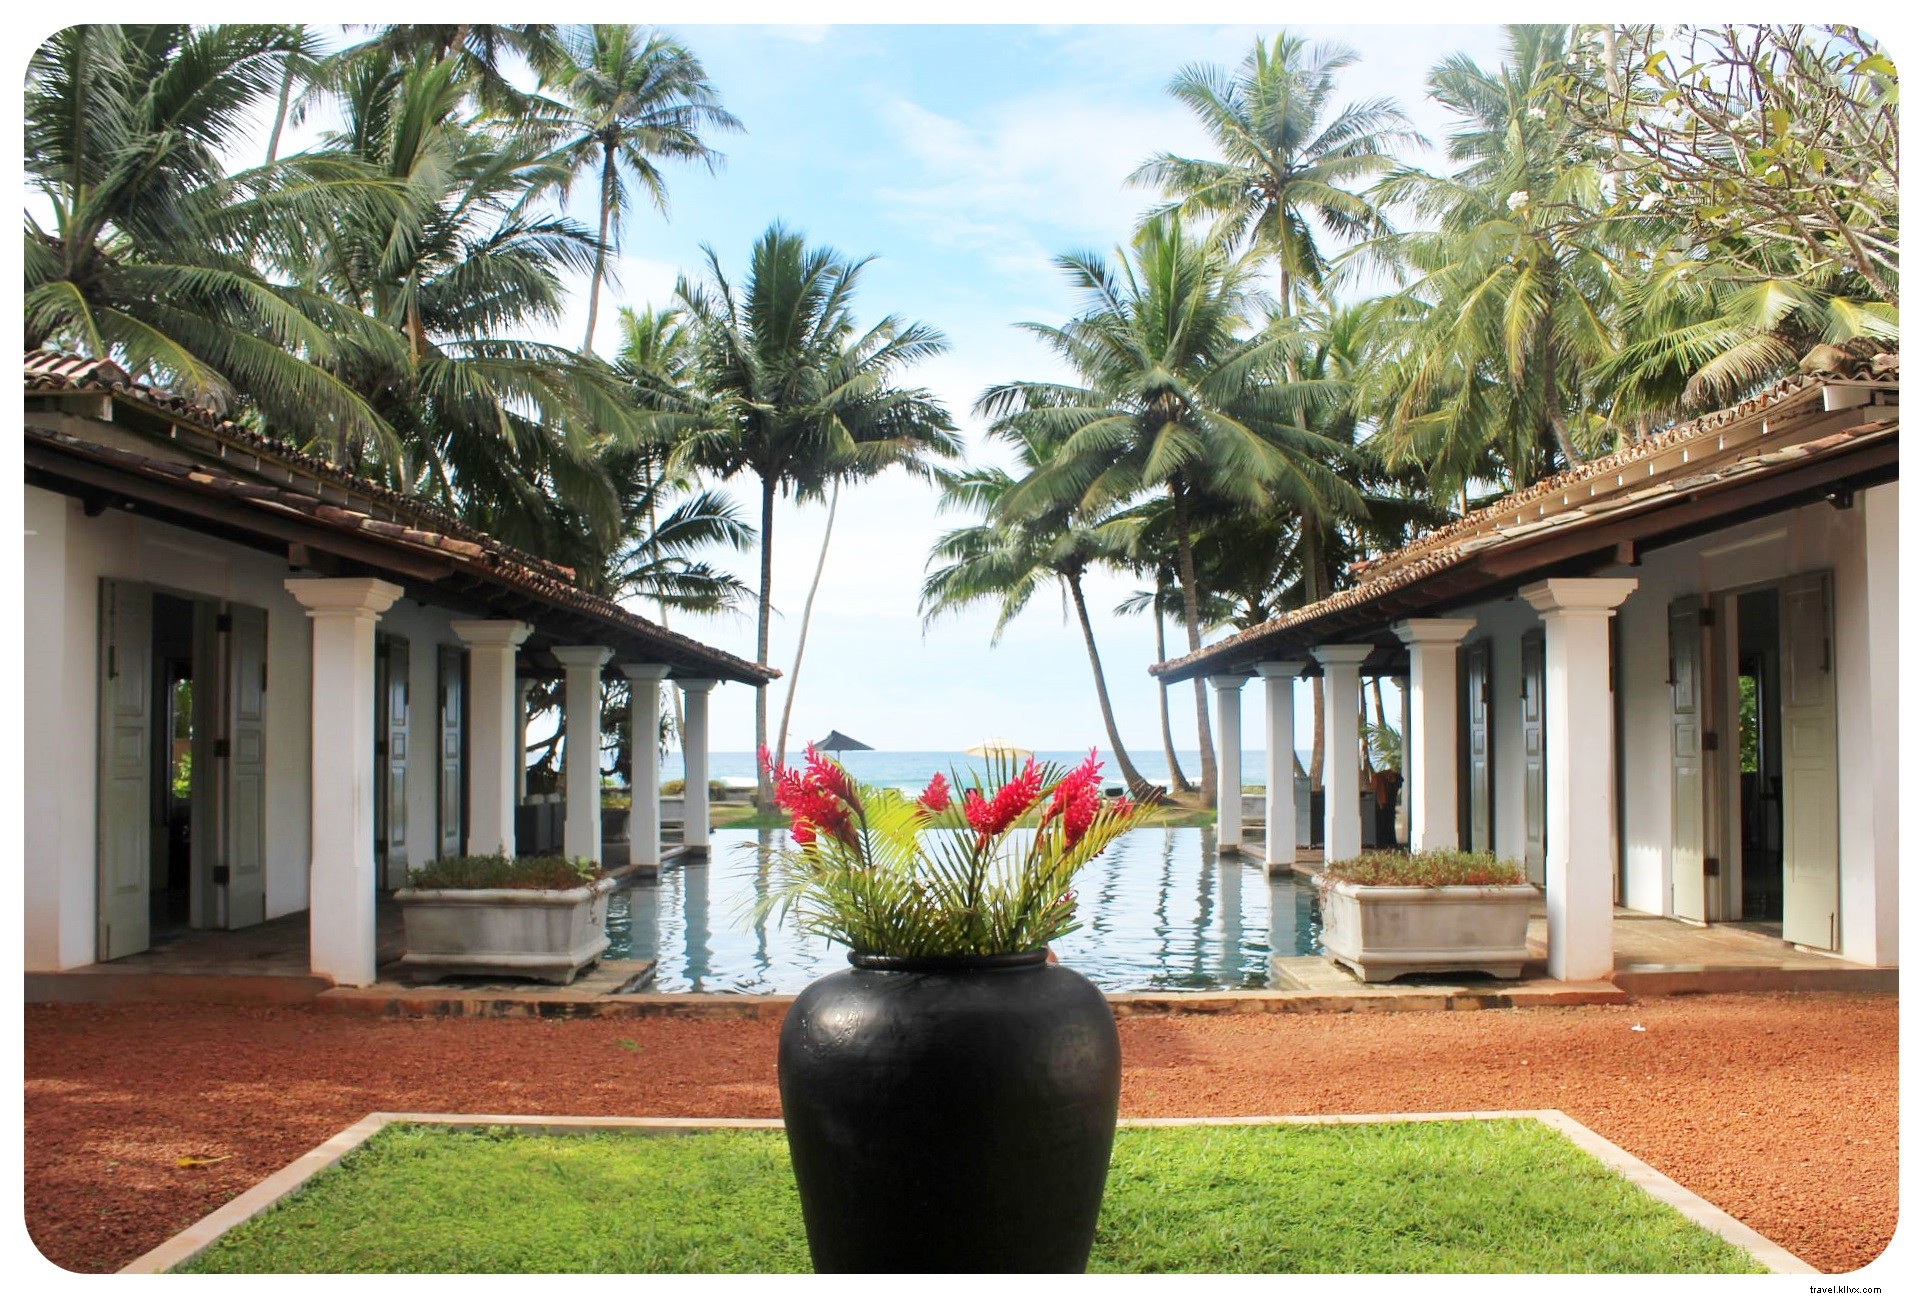 Tempat menginap di Pantai Thalpe, Sri Lanka:Era Beach by Jetwing Hotels